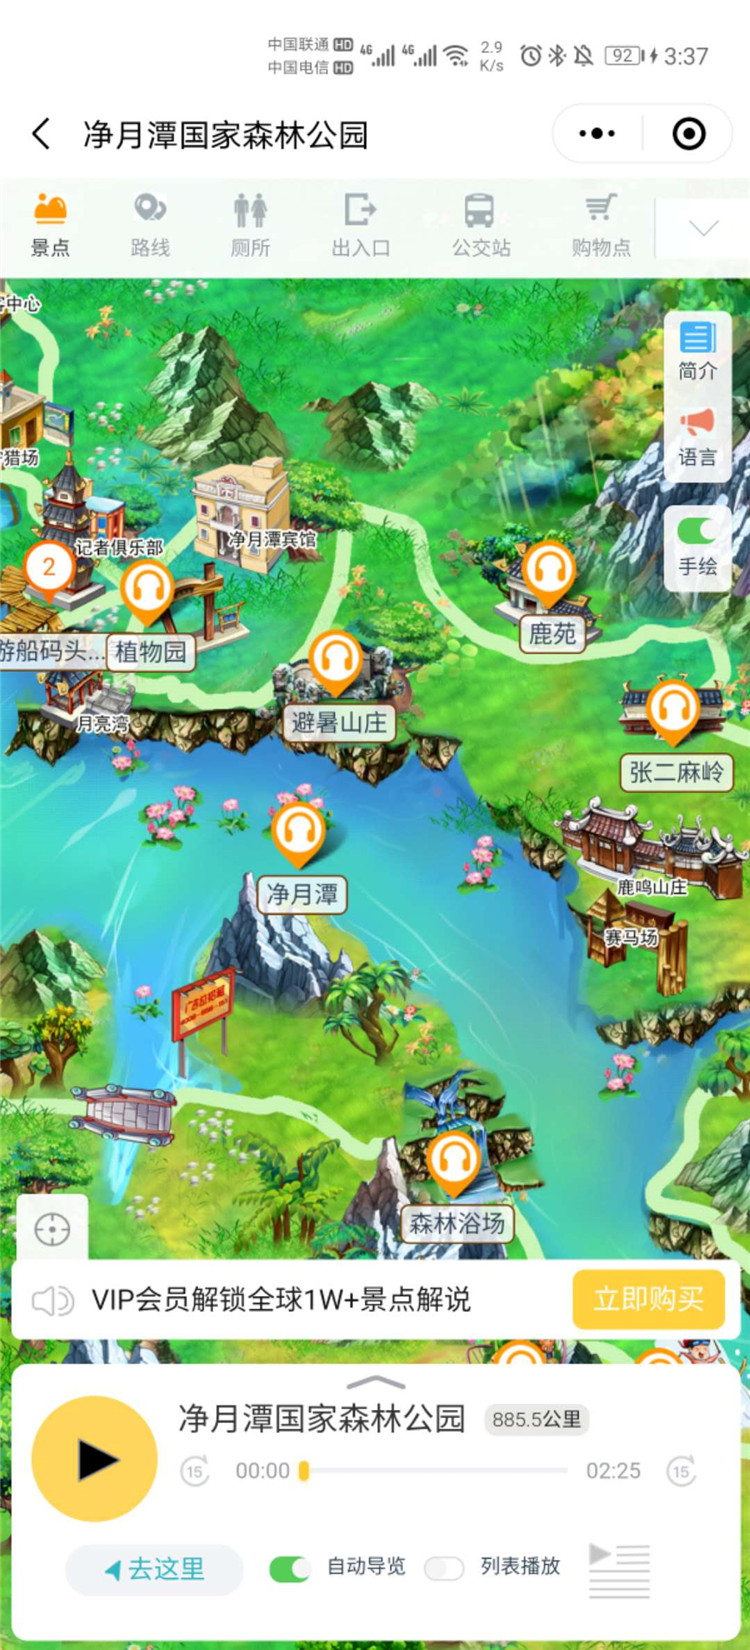 长春市净月潭景区智能导览系统上线了！包括：游览路线推荐、语音讲解、手绘地图1.jpg